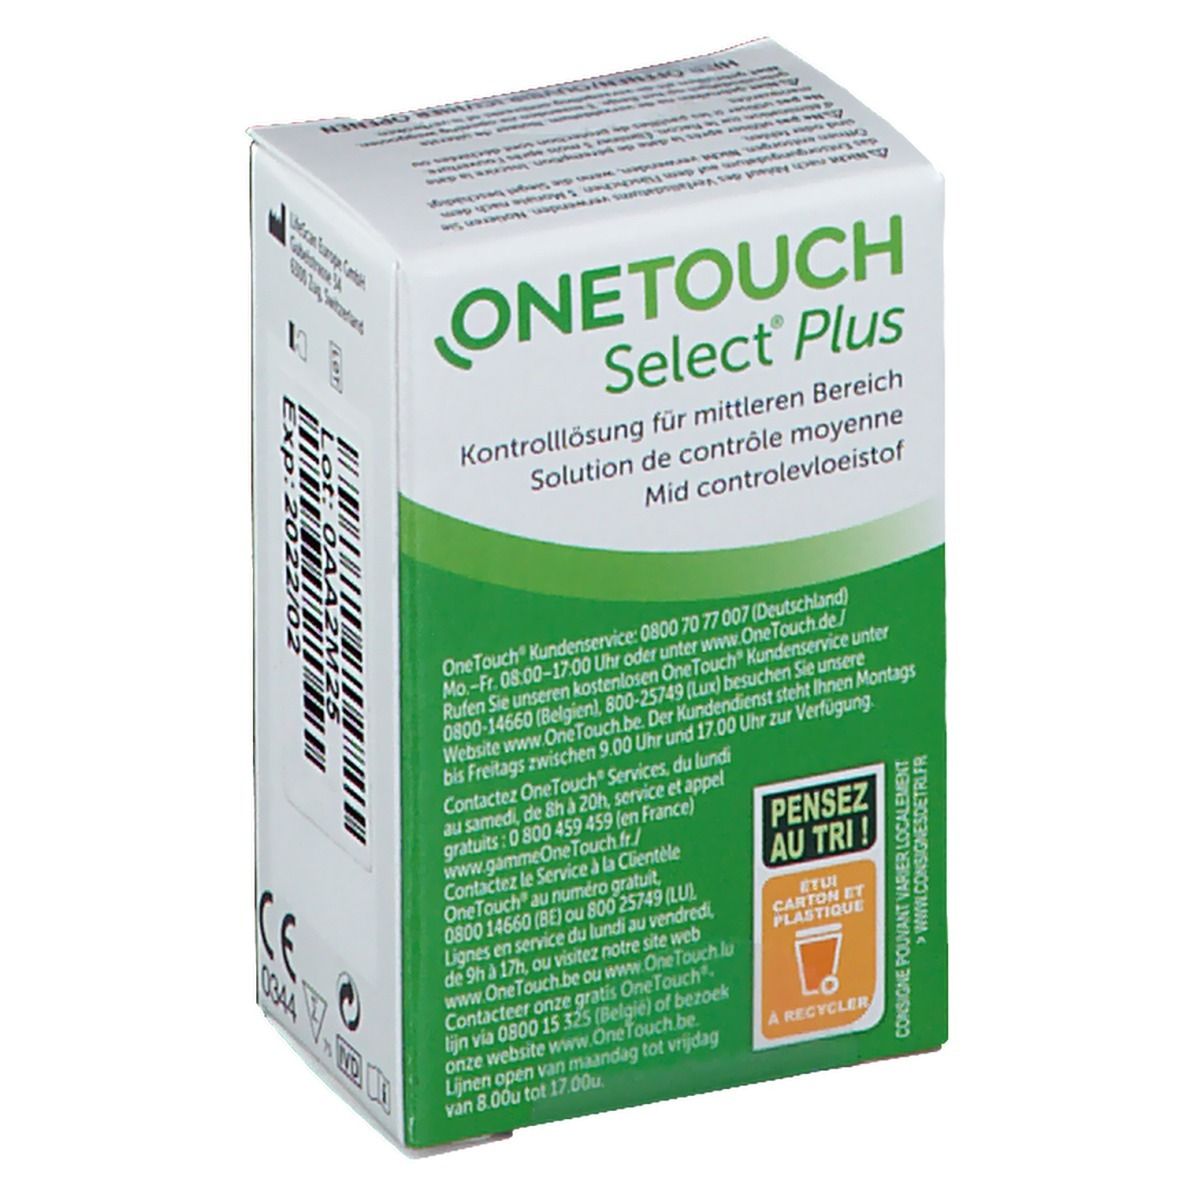 OneTouch® Select Plus® Solution de contrôle moyenne